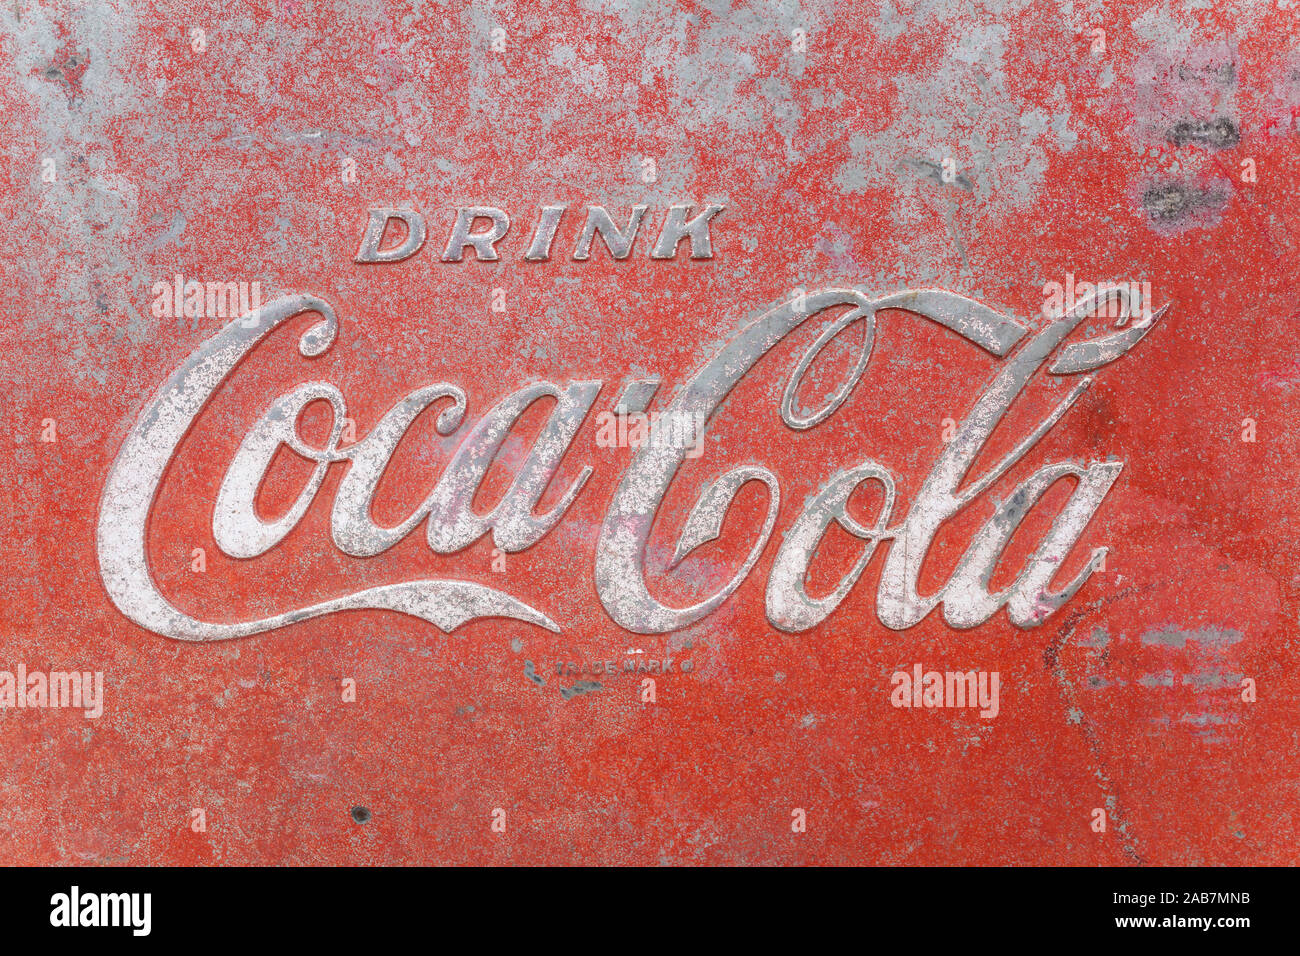 Coca Cola Vendu ici Publicité Rétro Vintage métal signe